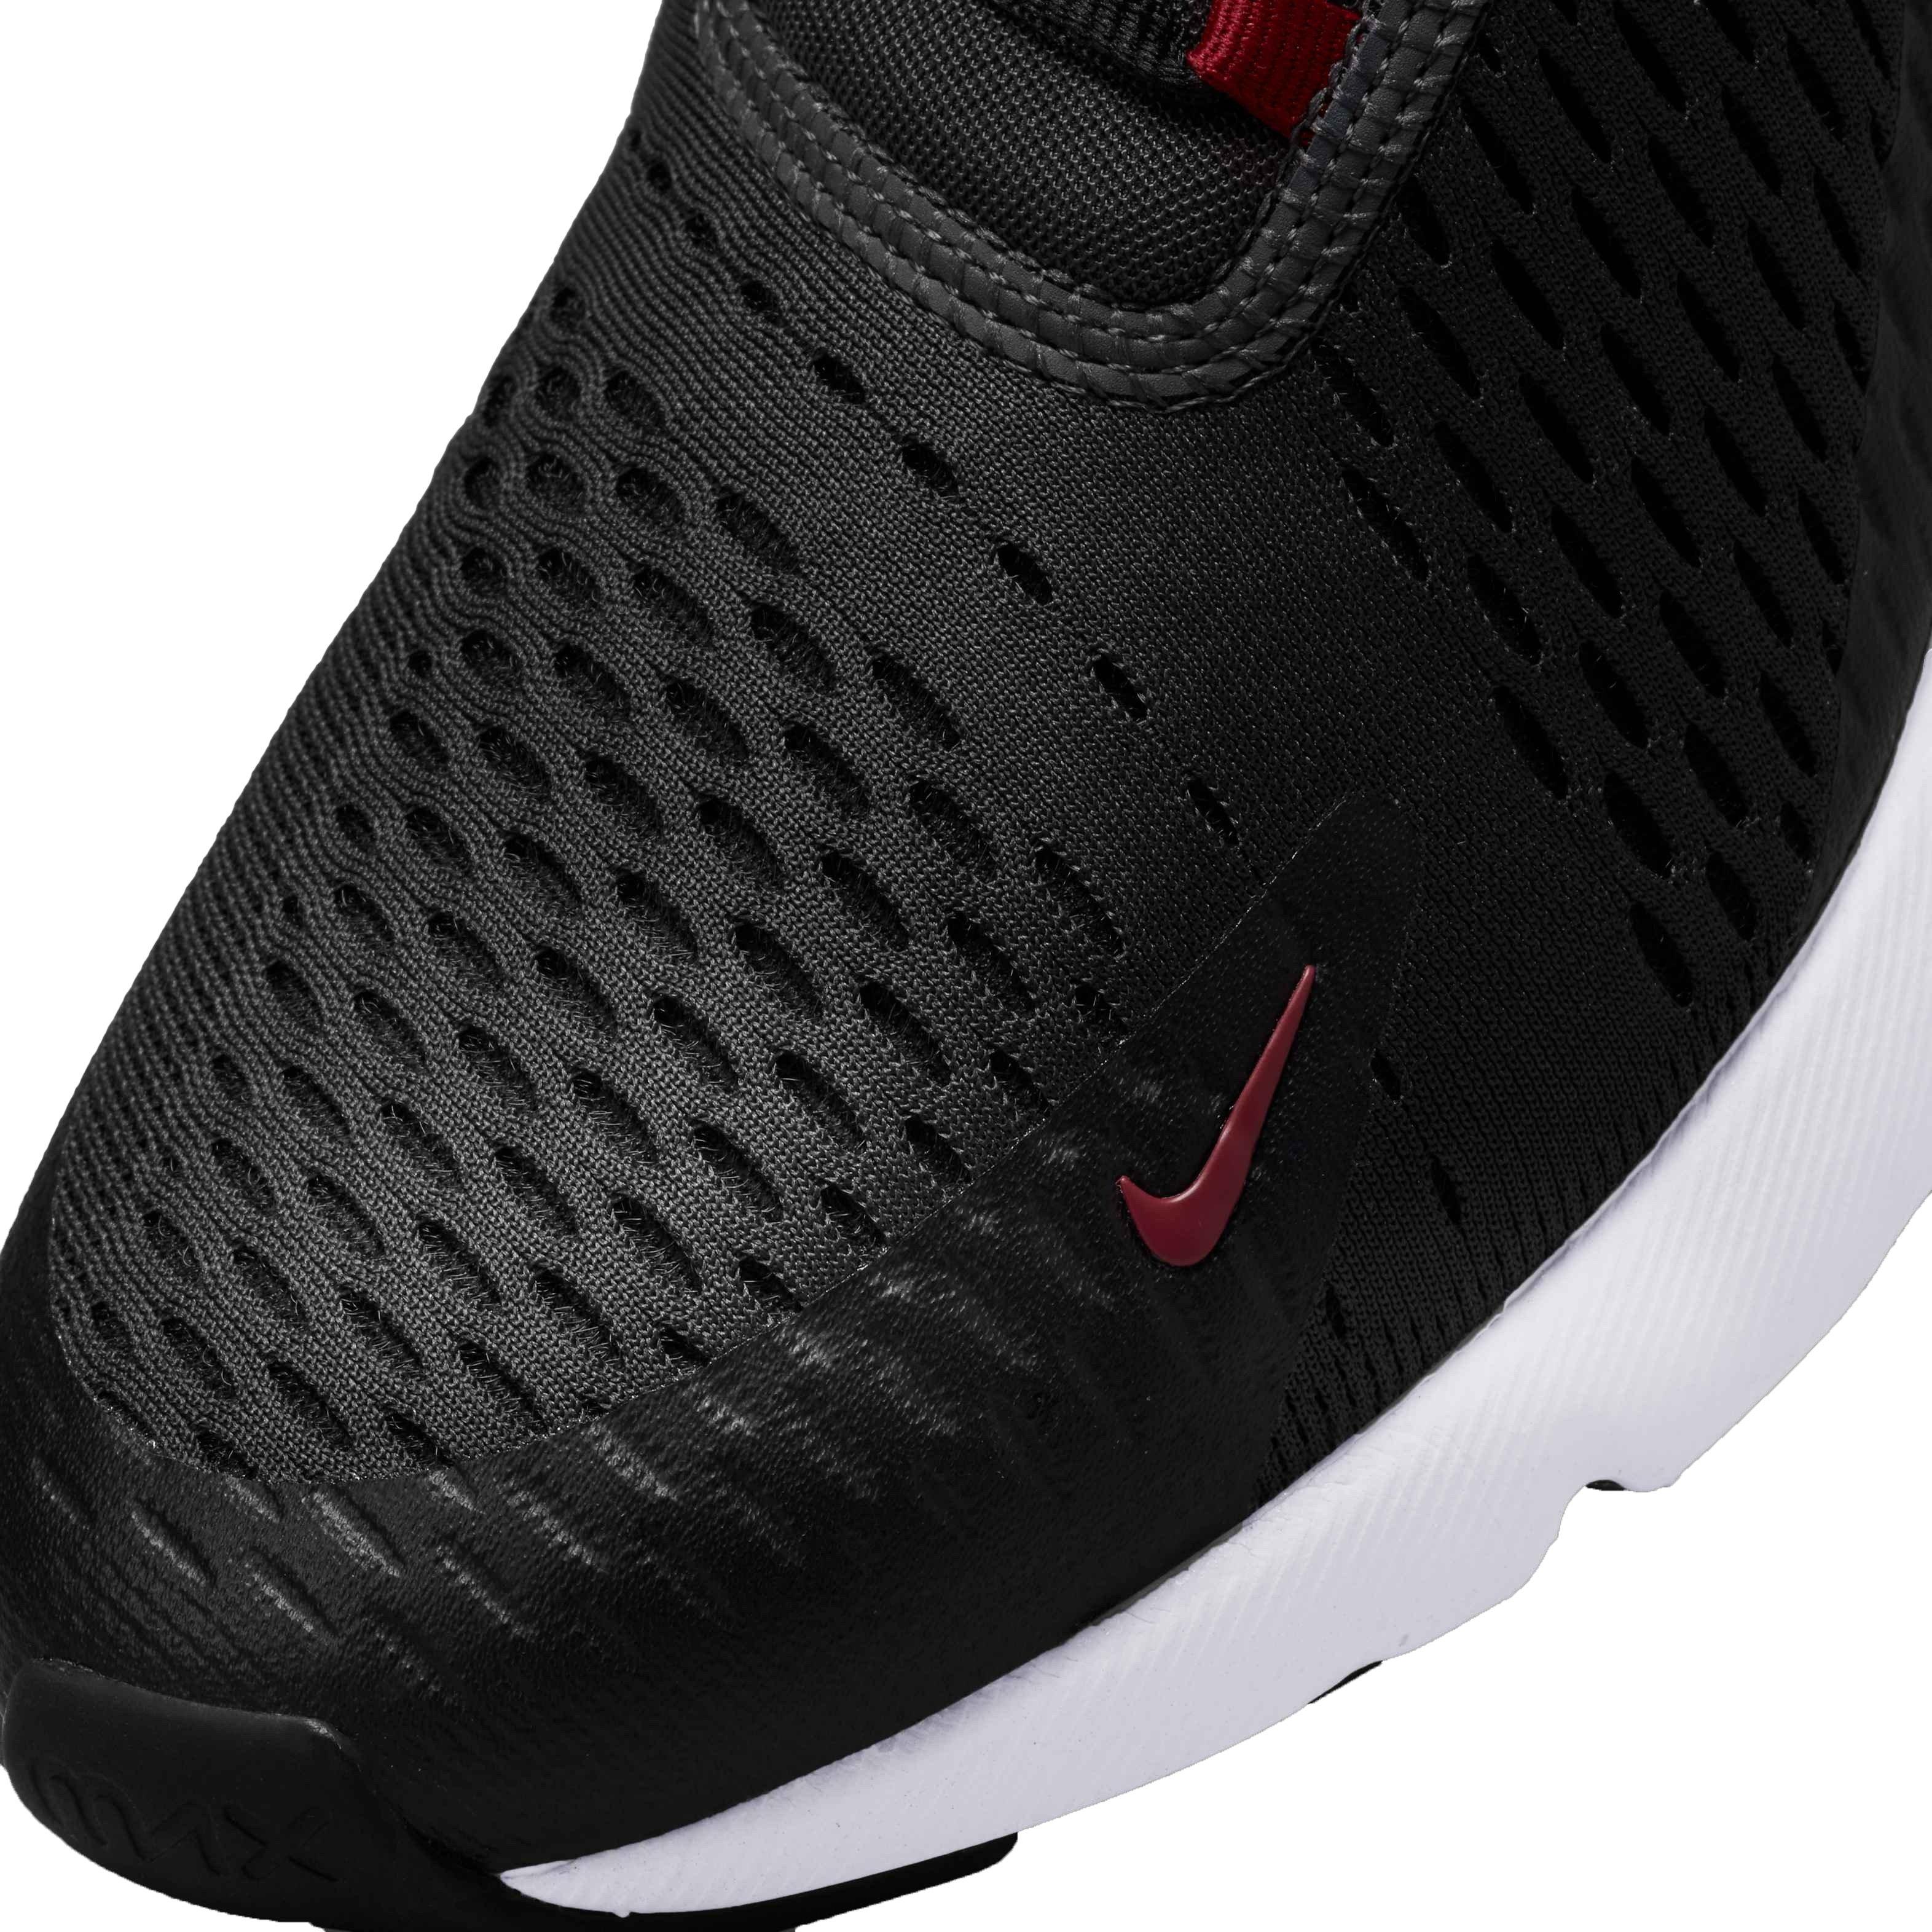 Paquete o empaquetar de ultramar Formular Nike Air Max 270 "Anthracite/Team Red/Black/White" Men's Shoe